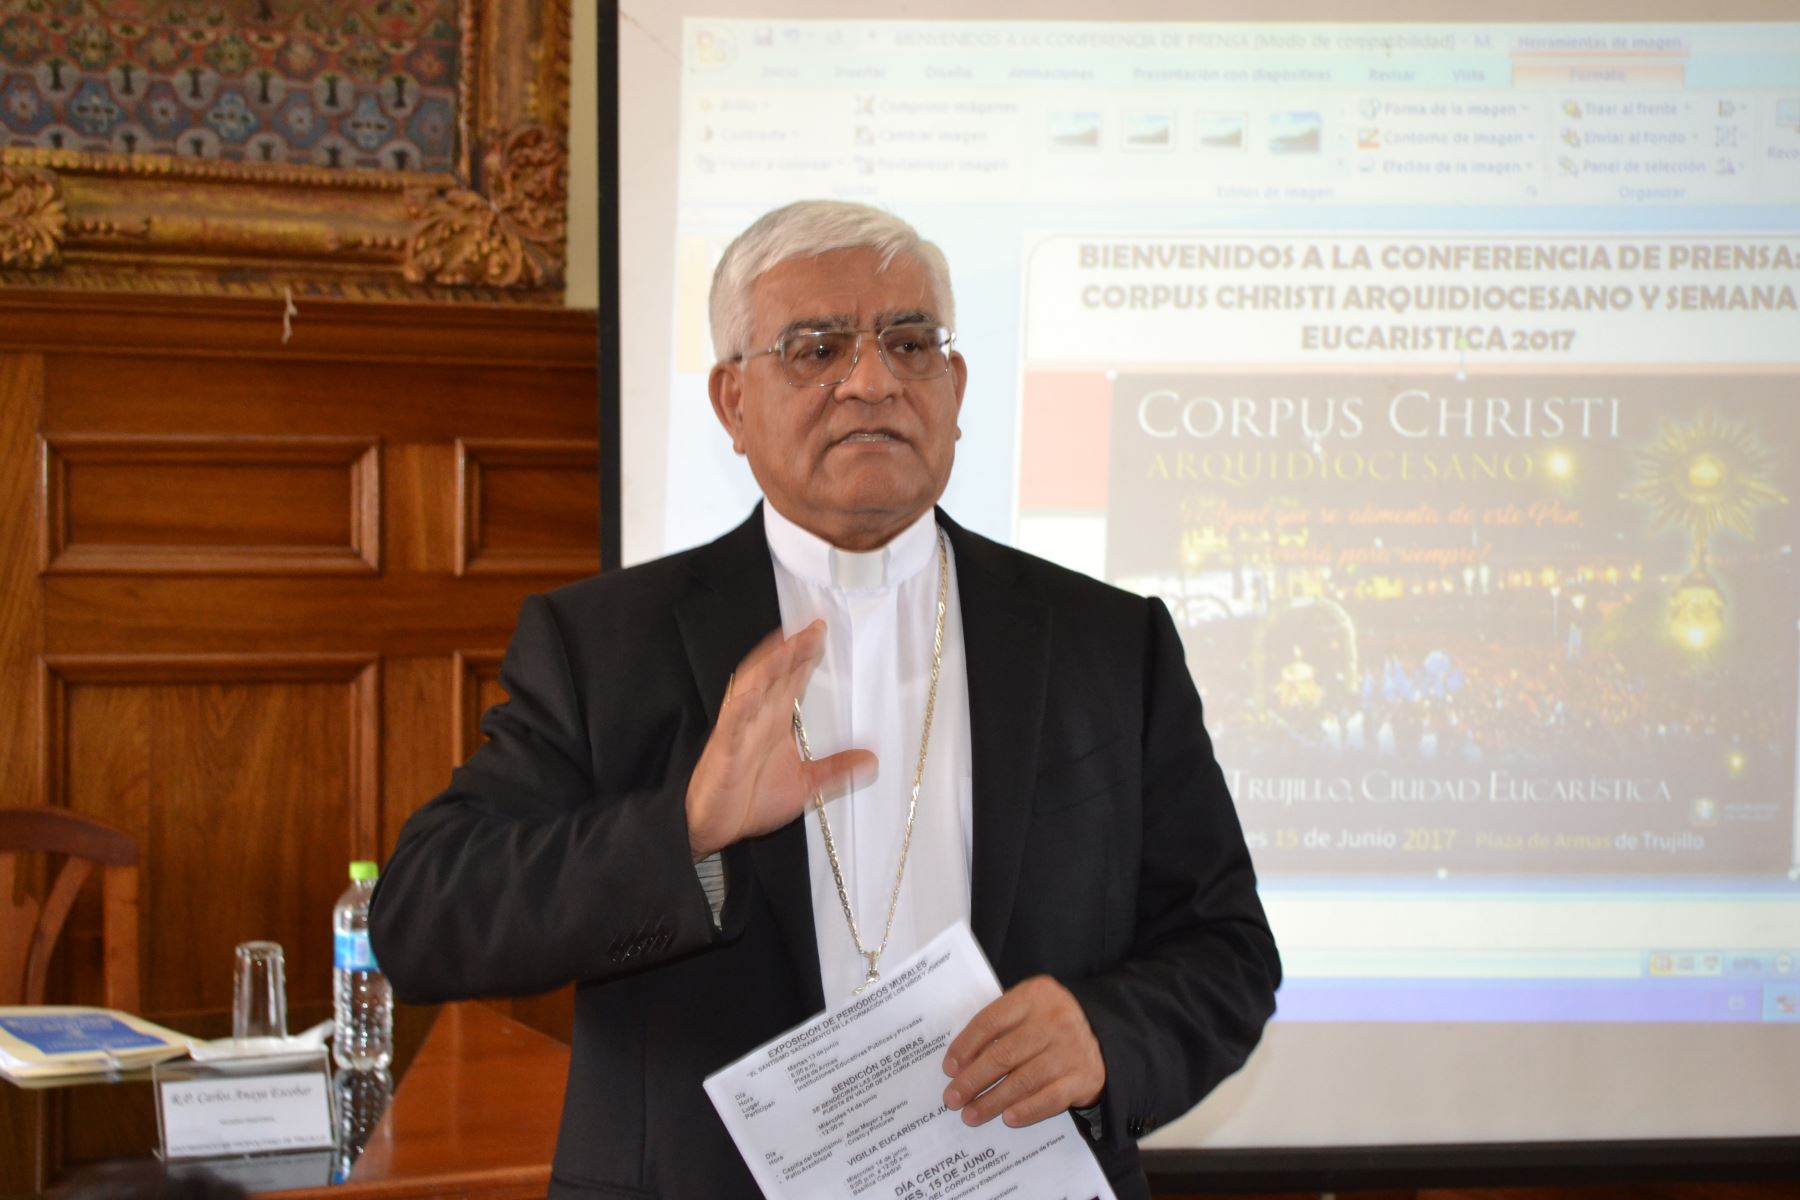 Arzobispado de Trujillo alerta de falsos pedidos de dinero por llegada del papa Francisco. Foto: ANDINA/Luis Puell.